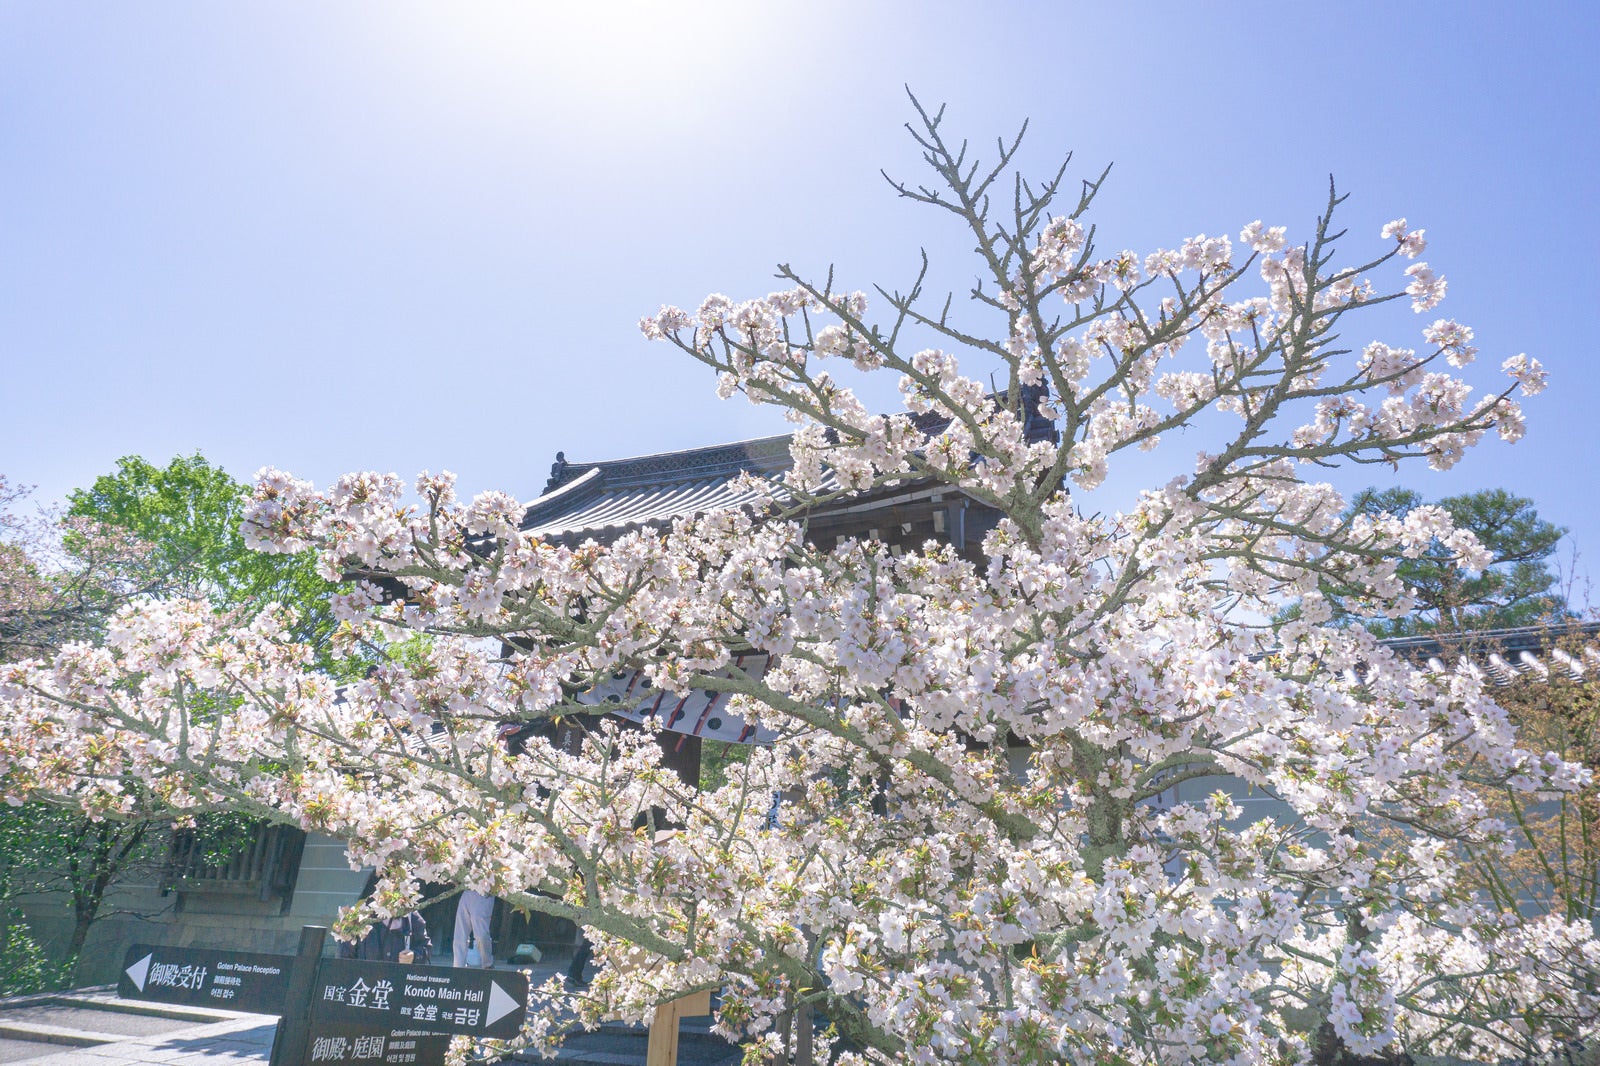 「逆光に輝く桜とその陰に建つ仁和寺本坊表門と案内看板」の写真